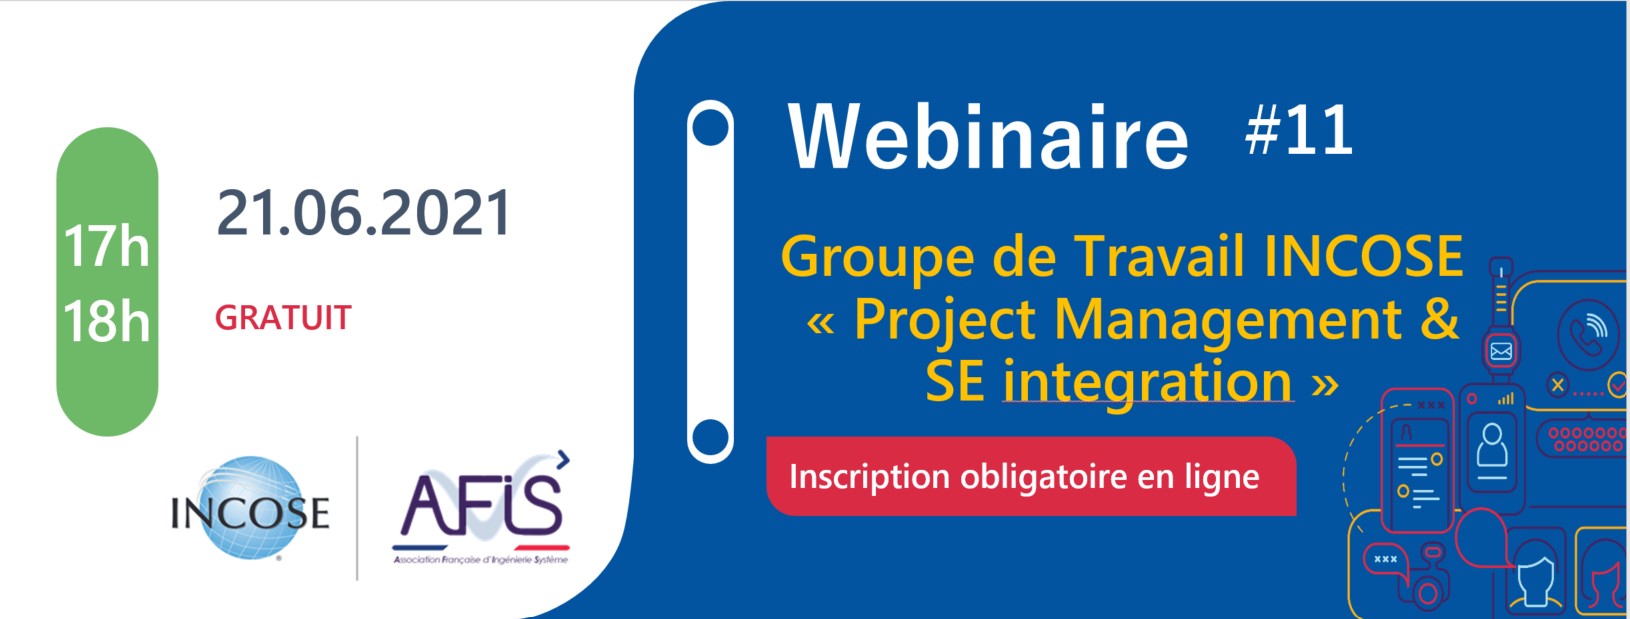 Webinaire AFIS #11 Groupe de travail INCOSE "Project Management & SE Integration"